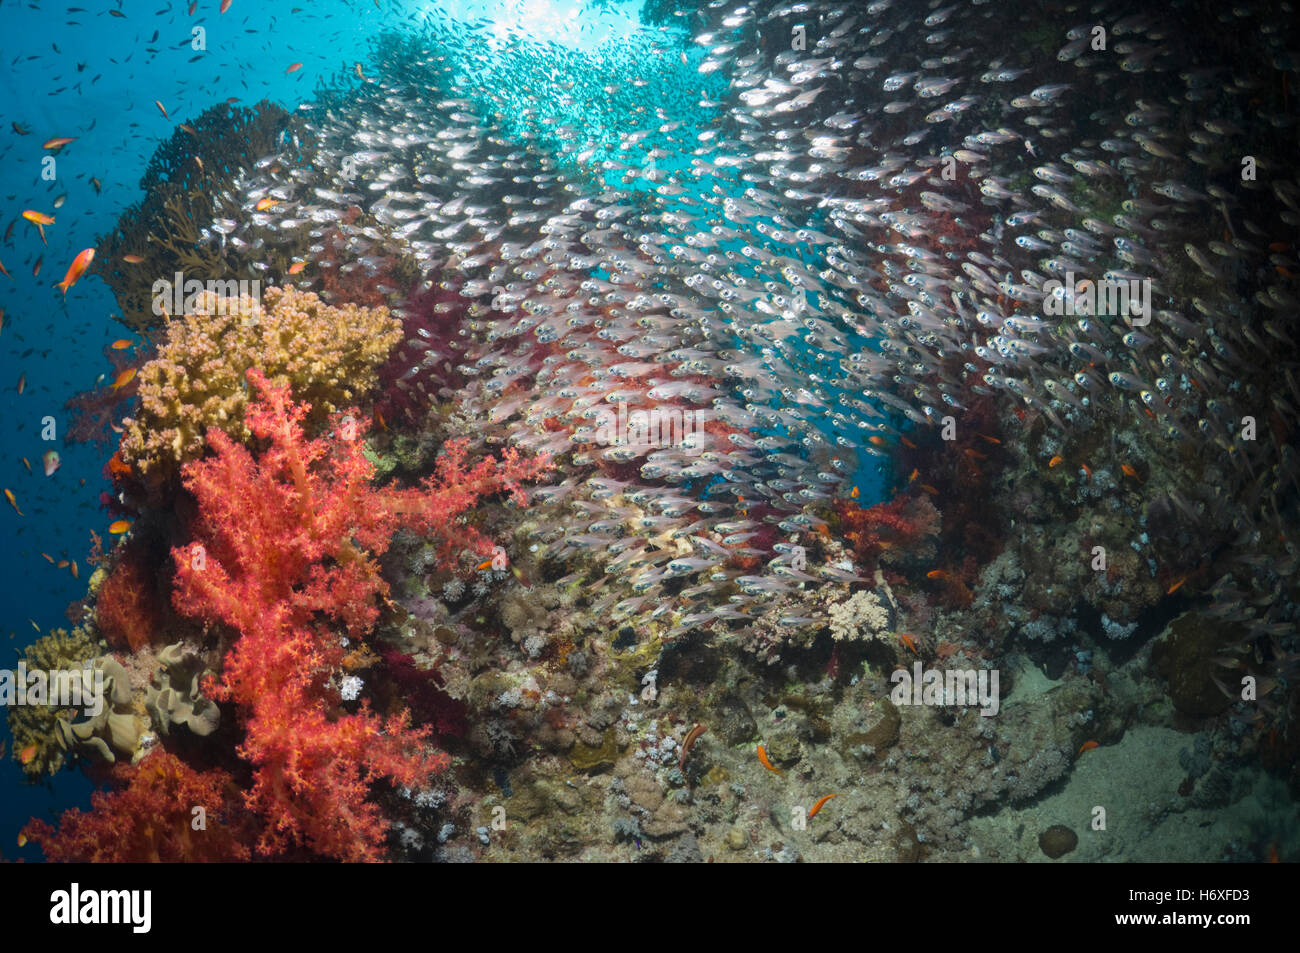 Coral reef paesaggi con coralli molli (Dendronephthya sp) e spazzatrici pigmeo (Parapriacanthus guentheri). Egitto, Mar Rosso. Foto Stock